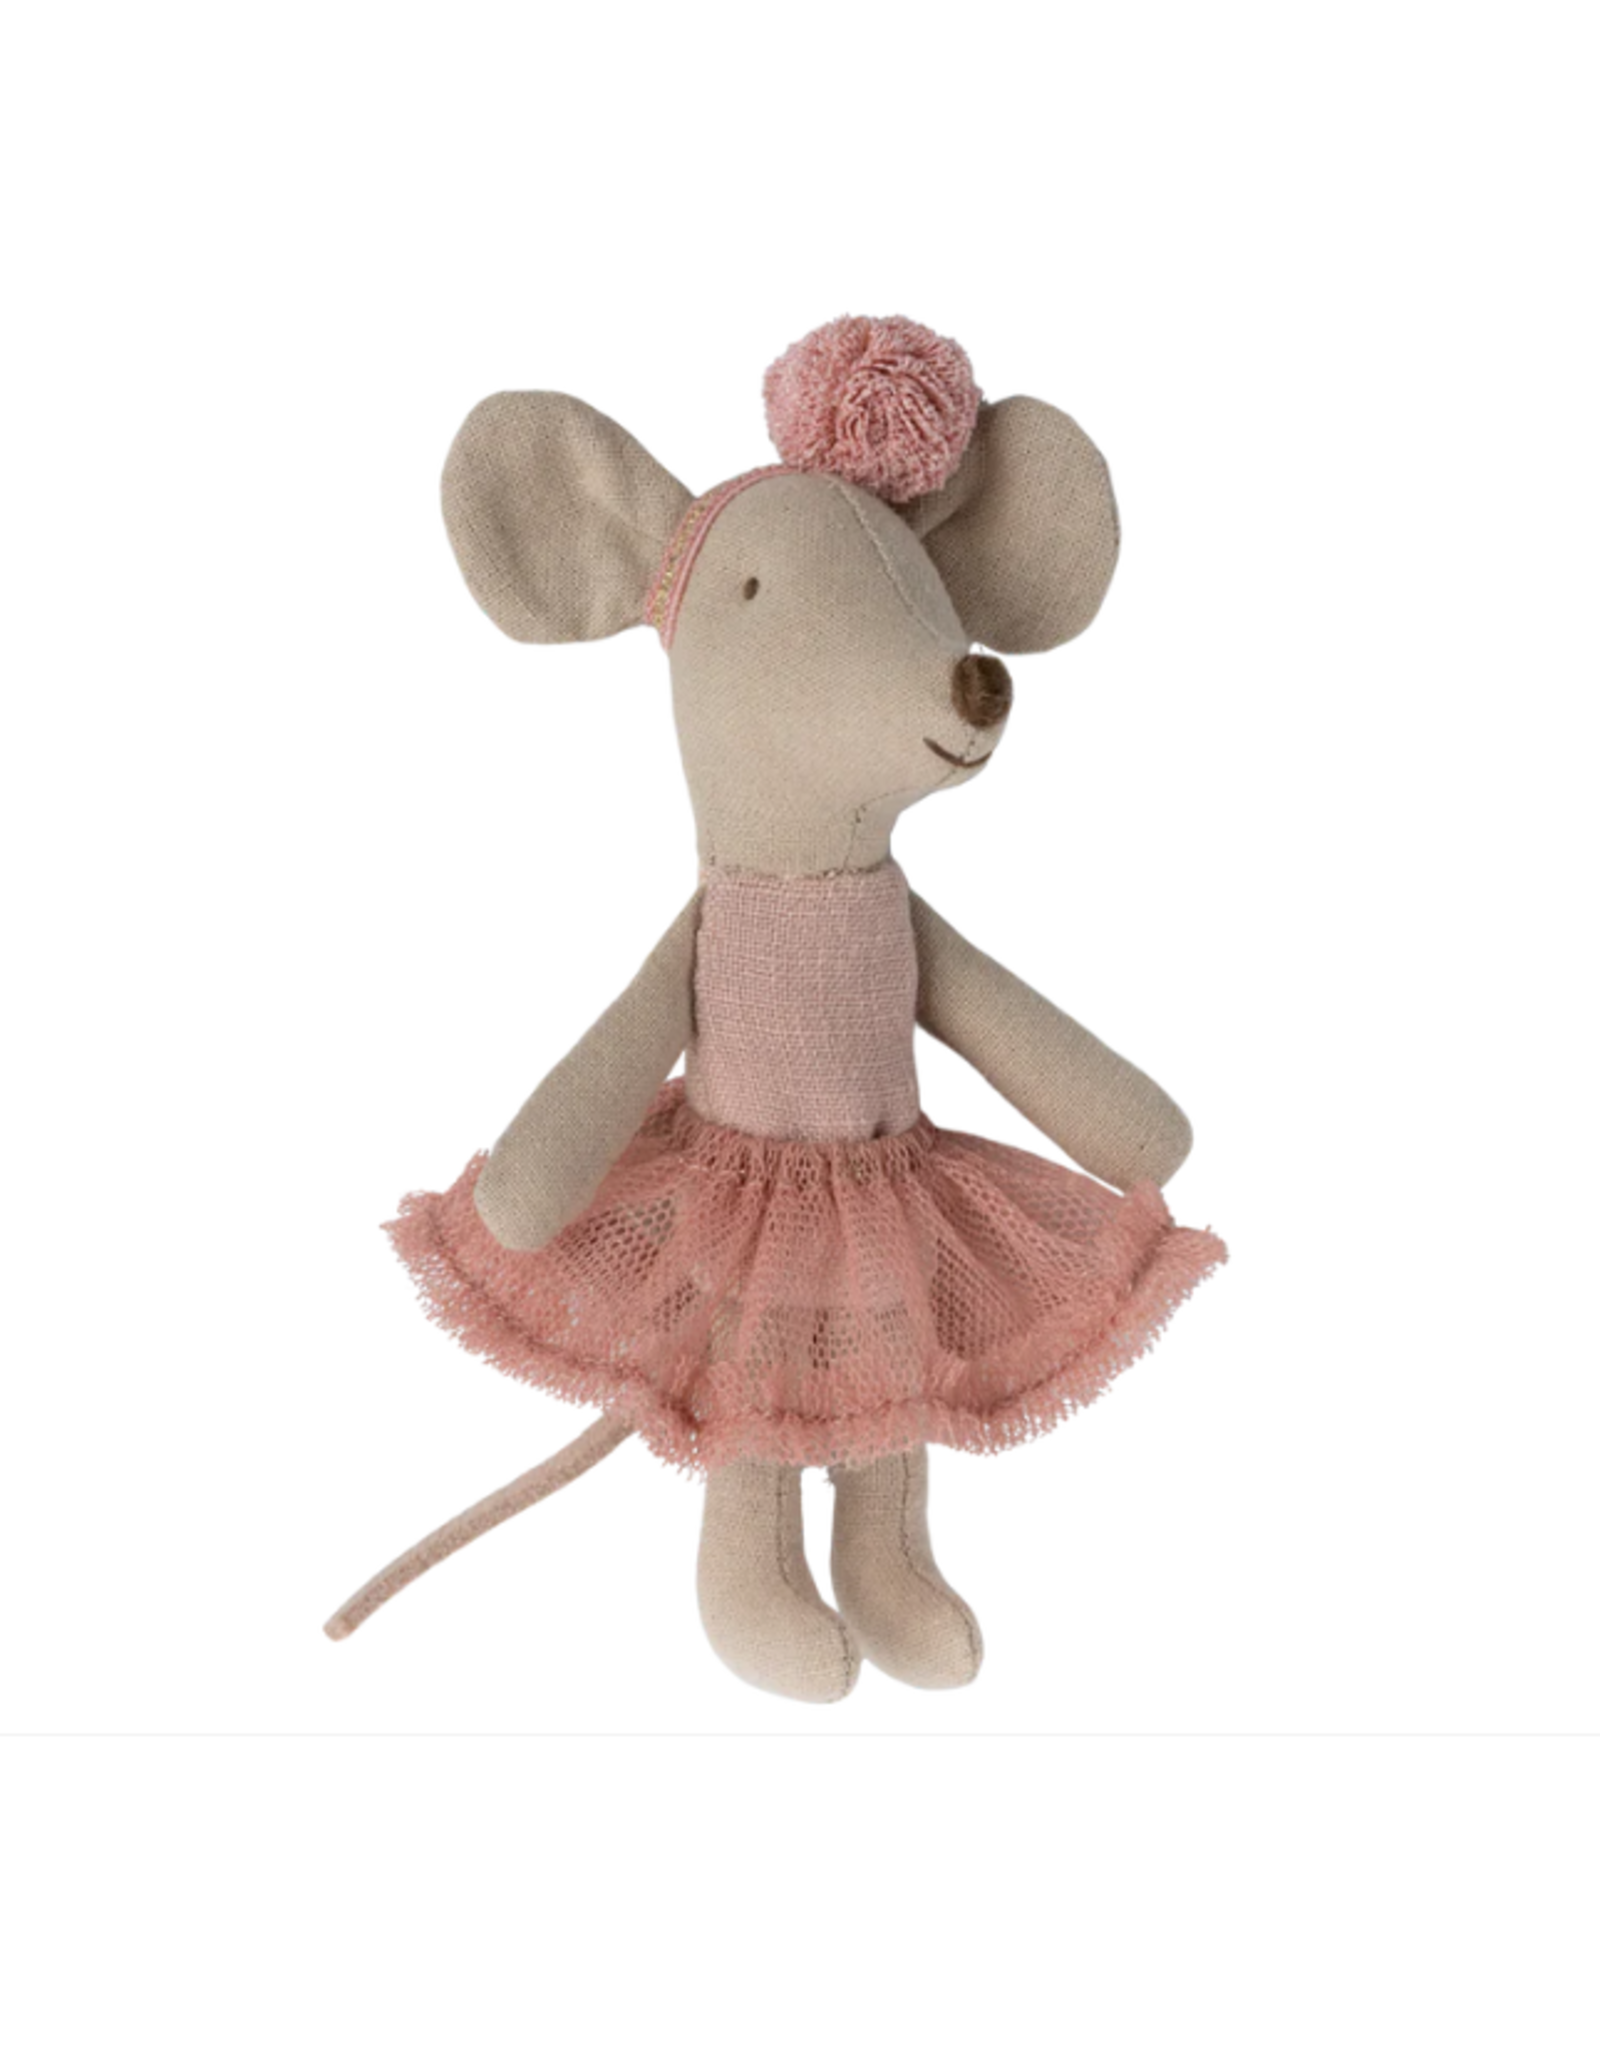 MAILEG Ballerina Mouse, little sister - Rose